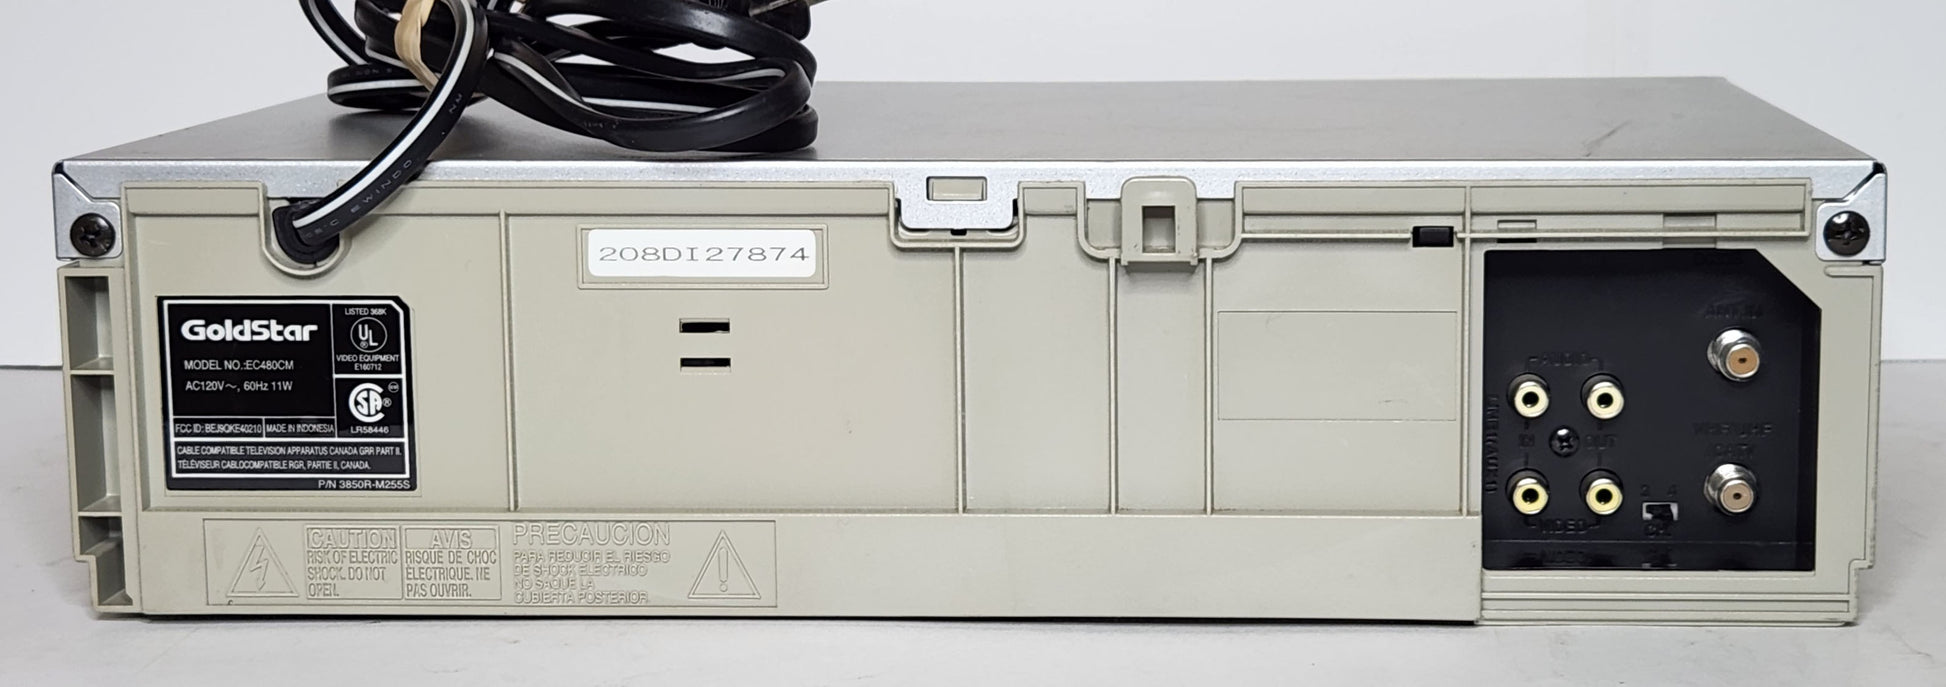 Goldstar VCR con REMOTO, PAQUETE PROBADO OFERTA, reproductor VHS EC480CM y  grabadora de alta fidelidad